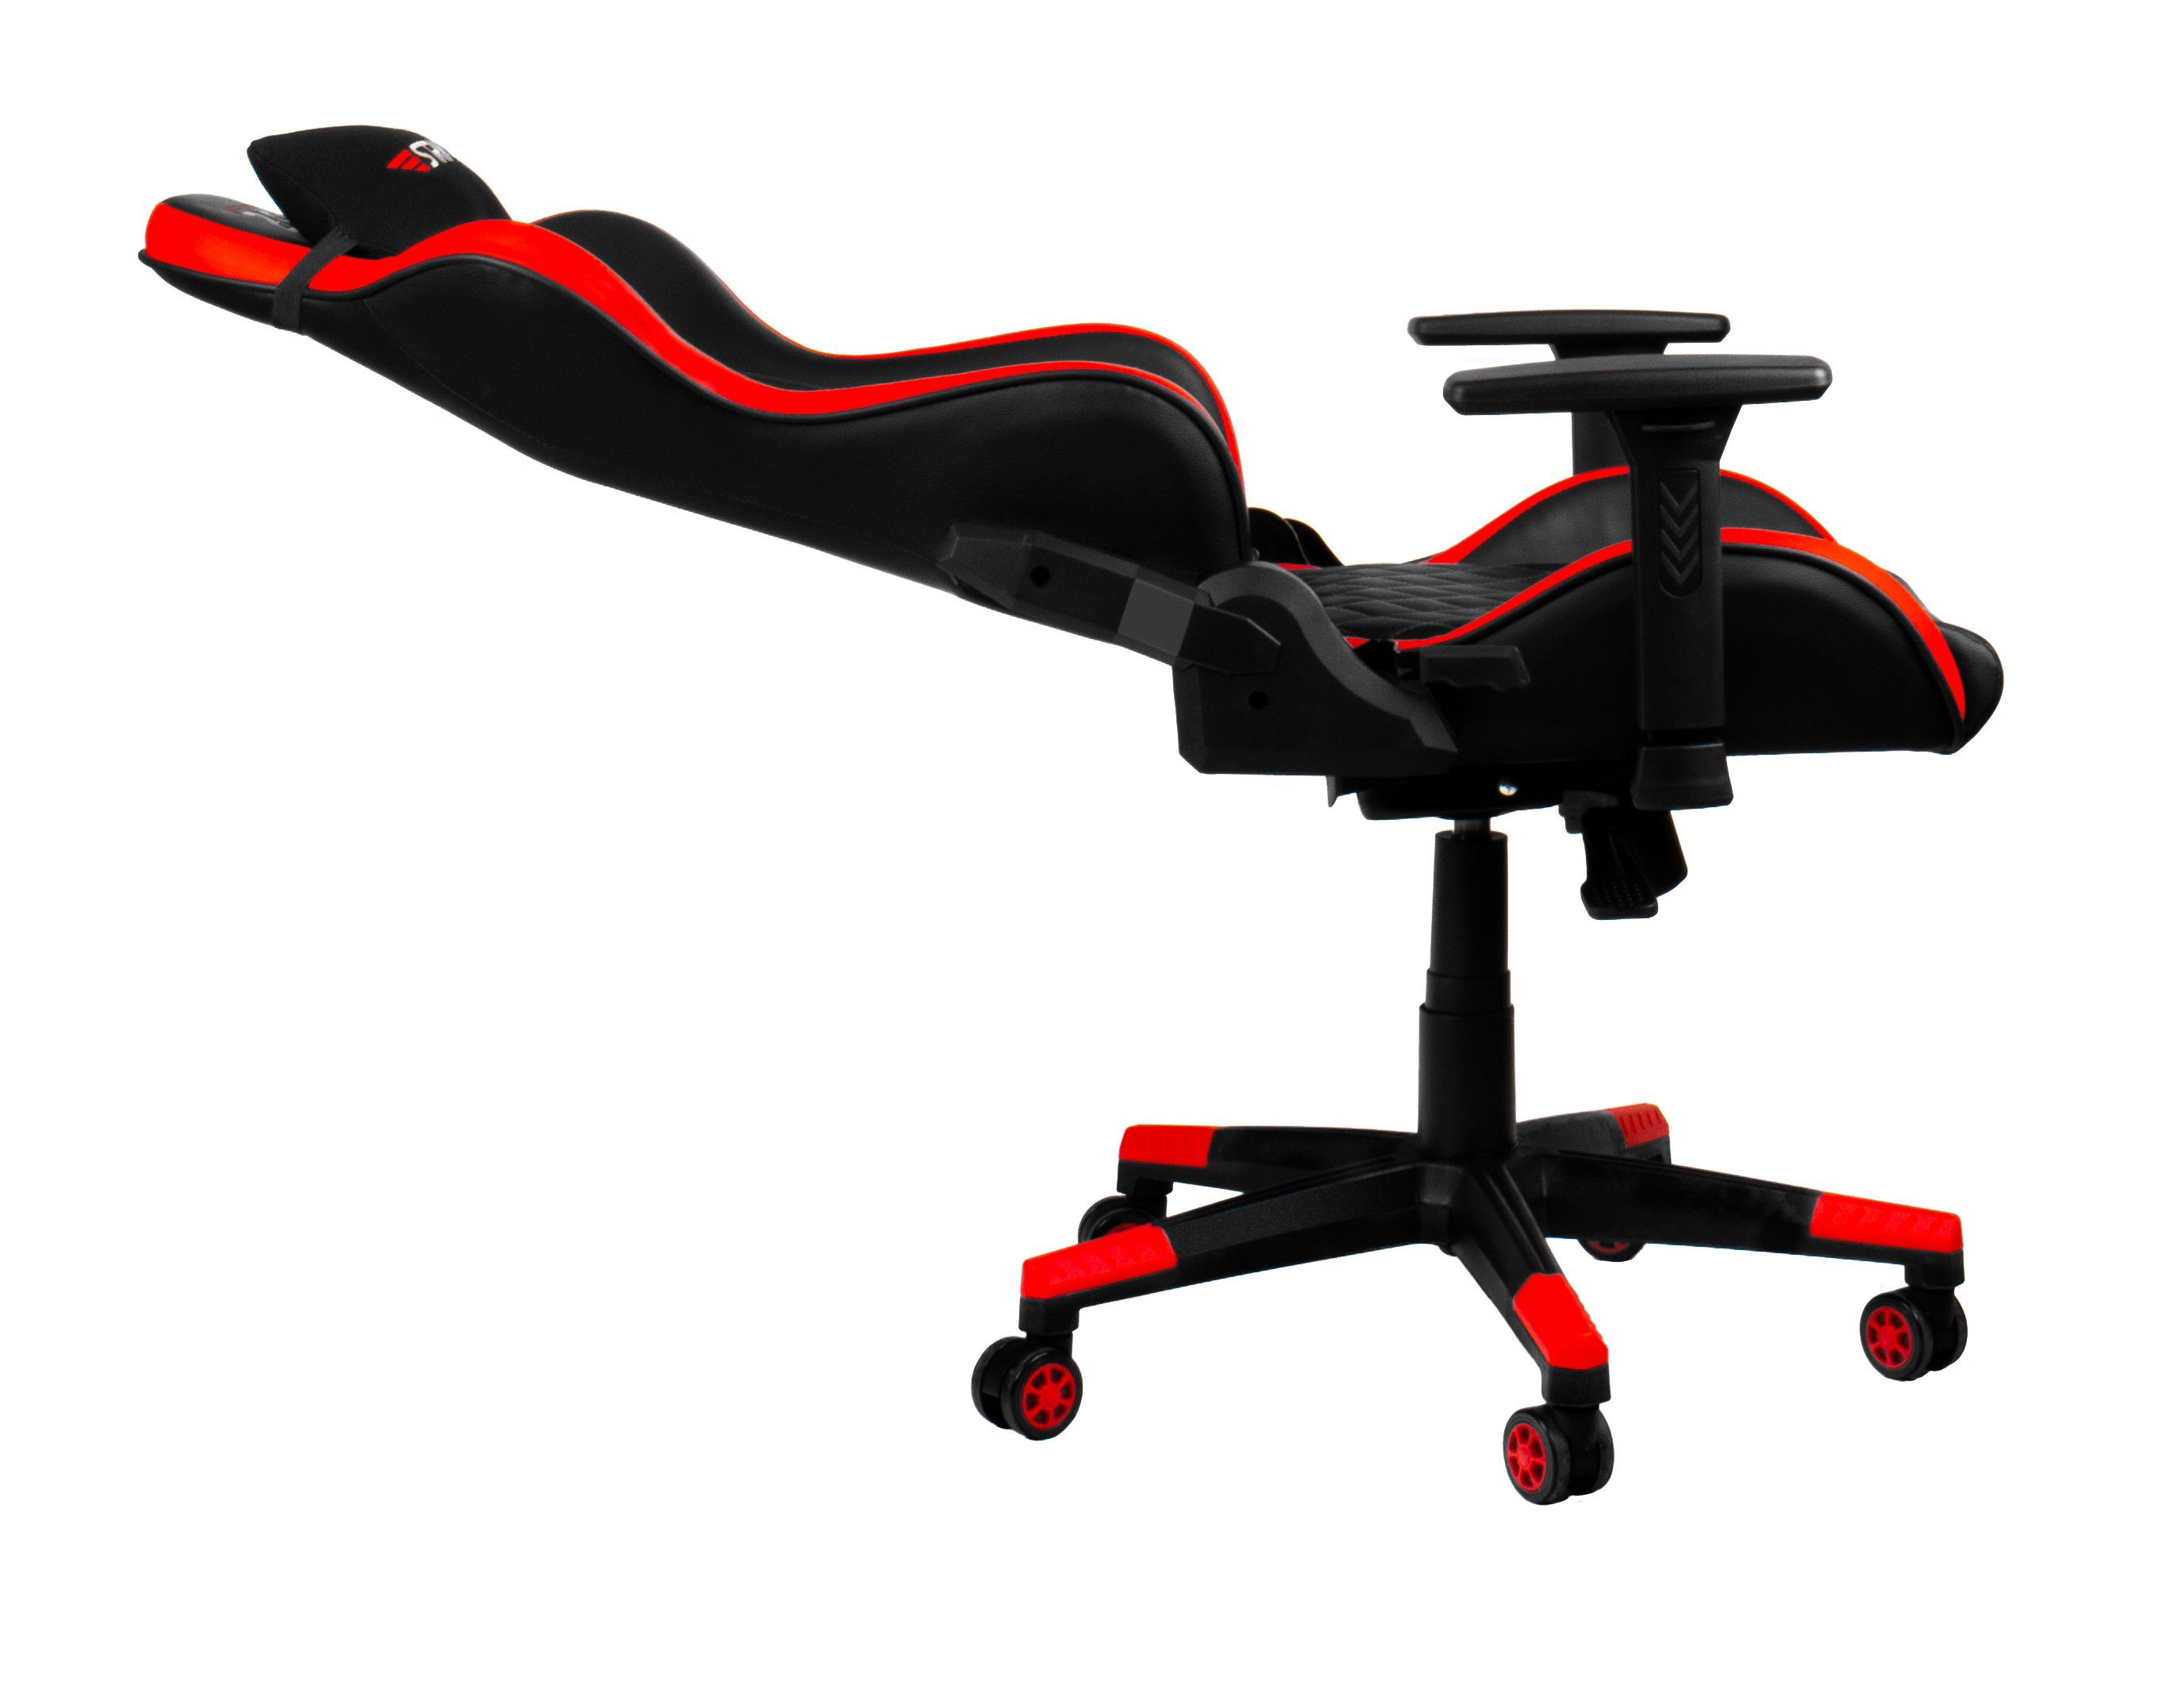 Red Gamingstuhl,Schreibtischstuhl XL" "Striker ergonomischer Code Gaming-Stuhl Hyrican